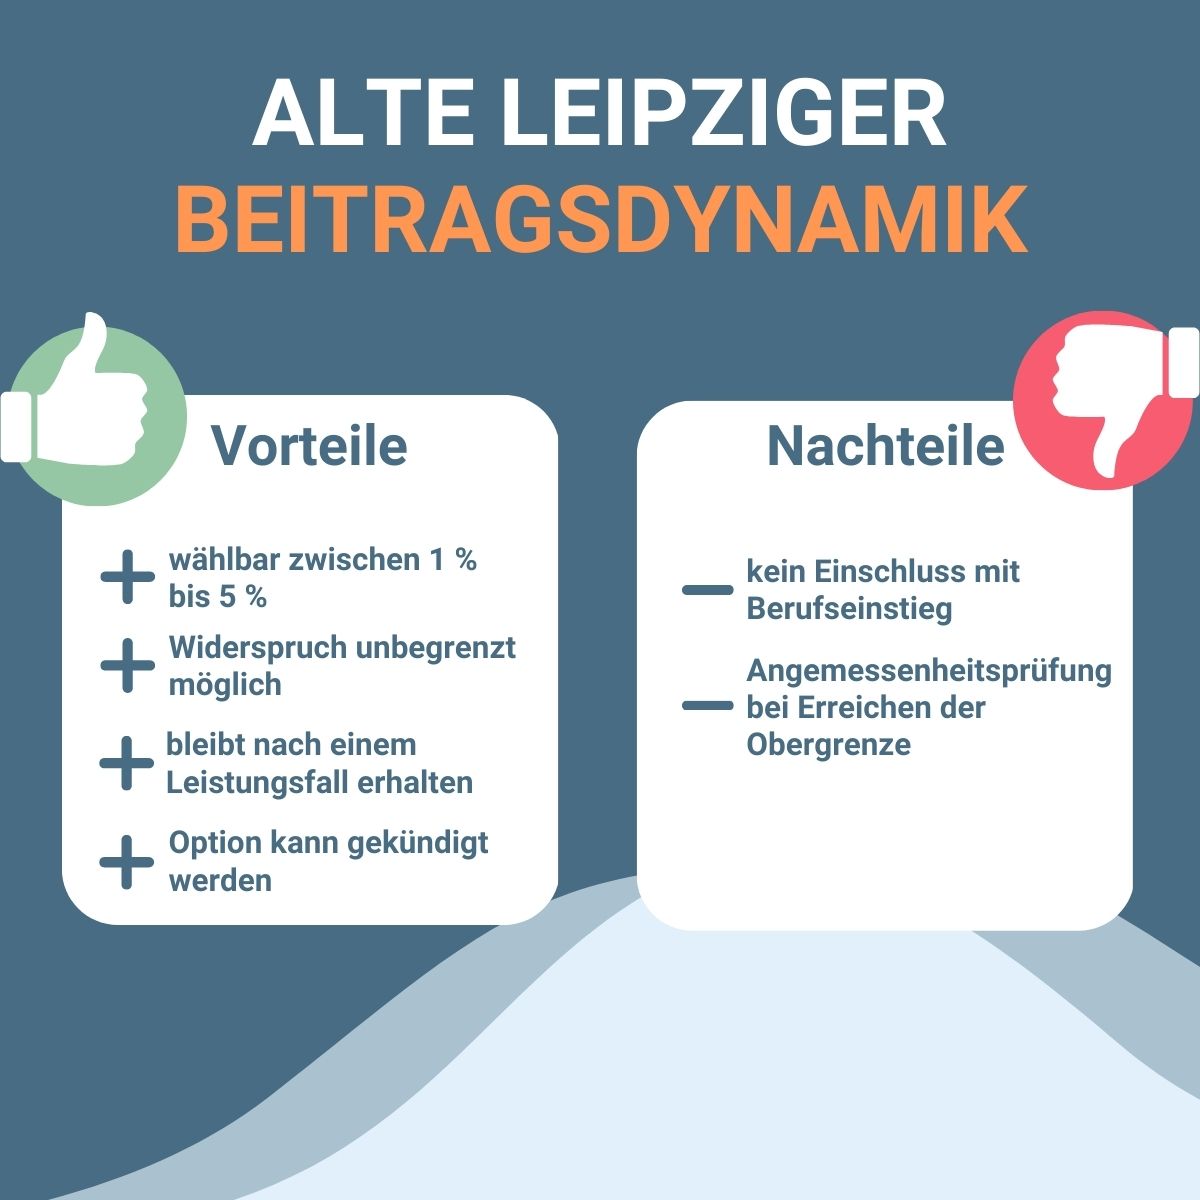 Infografik zu Vorteilen und Nachteilen Beitragsdynamik des BU-Tarifs BV10 der Alte Leipziger.